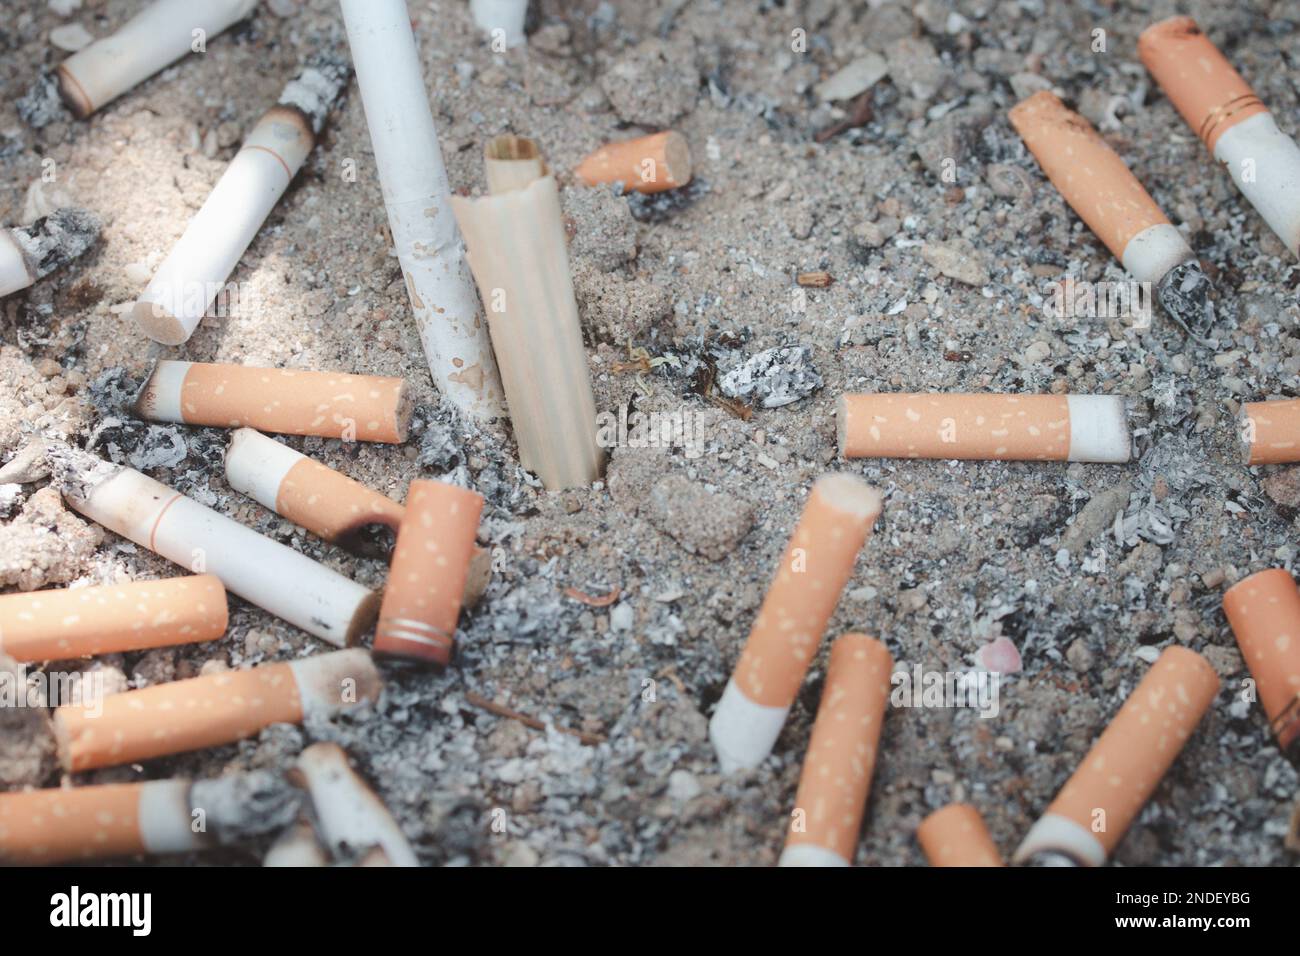 Mégots de cigarettes combinés dans un concept de disque de cigarettes de nombreux débris de cigarettes après avoir fumé Banque D'Images